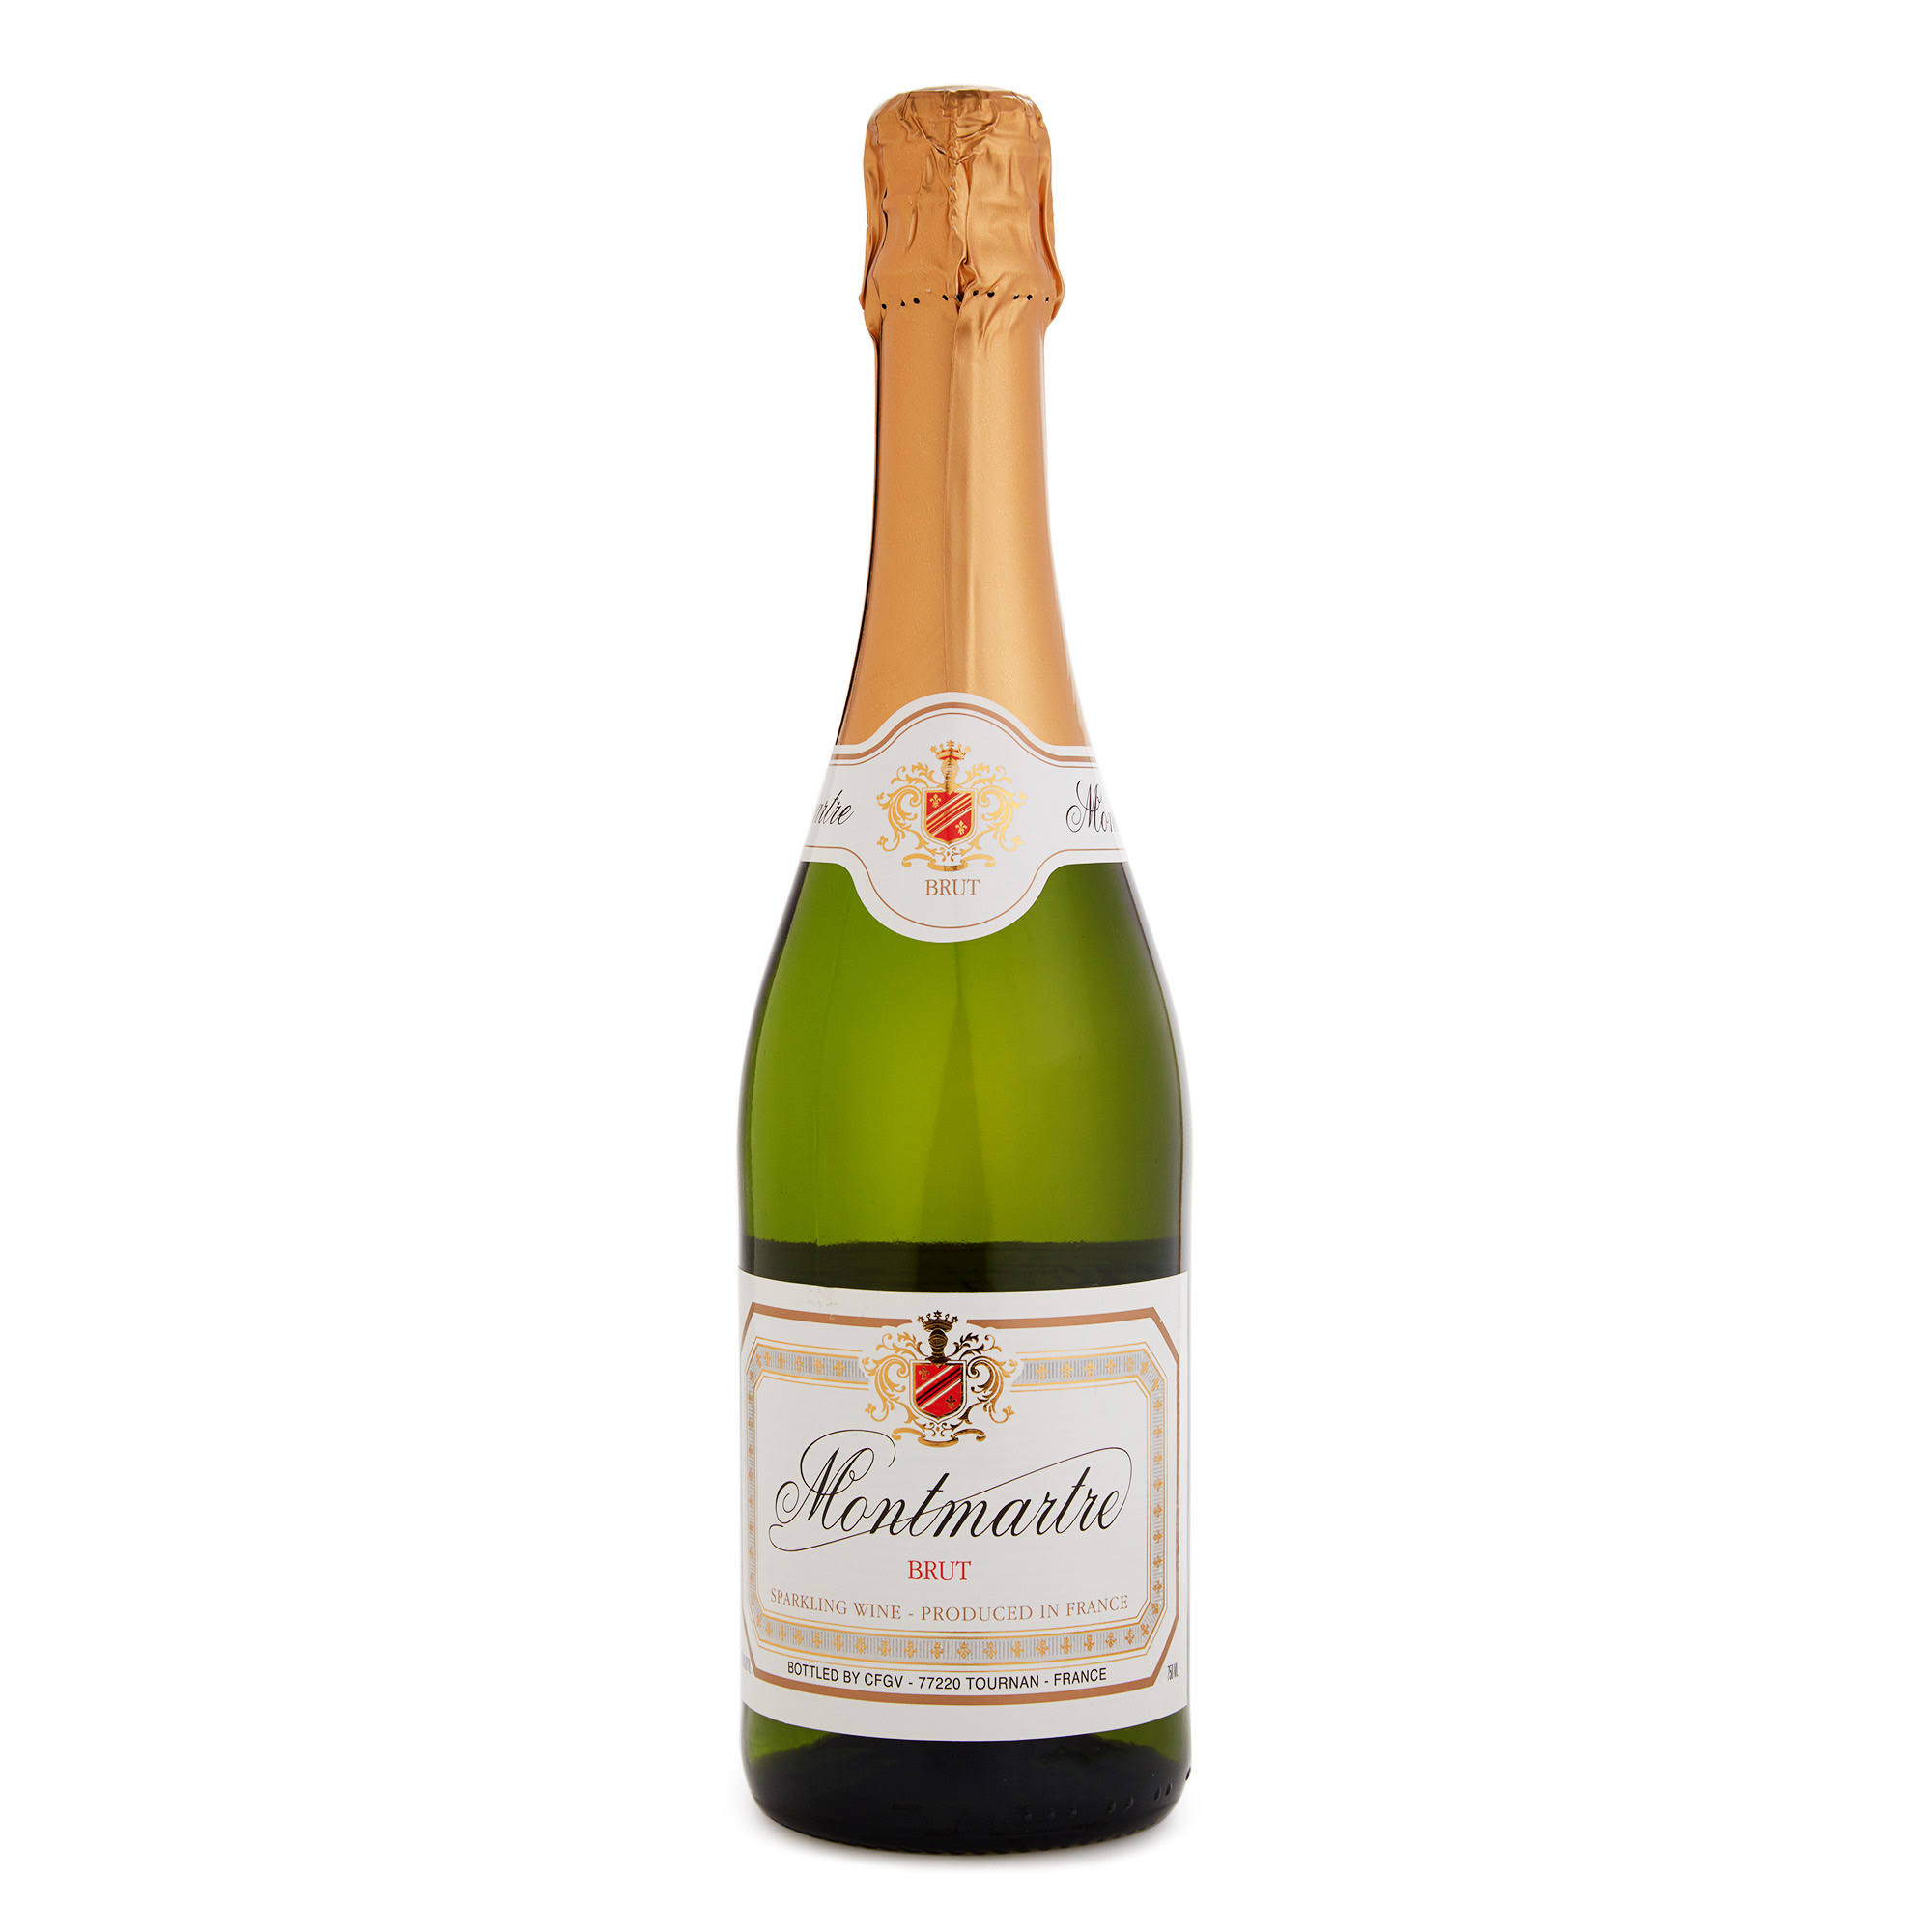 Montmartre Brut Champagne & Sparkling Wine | 750ml | France